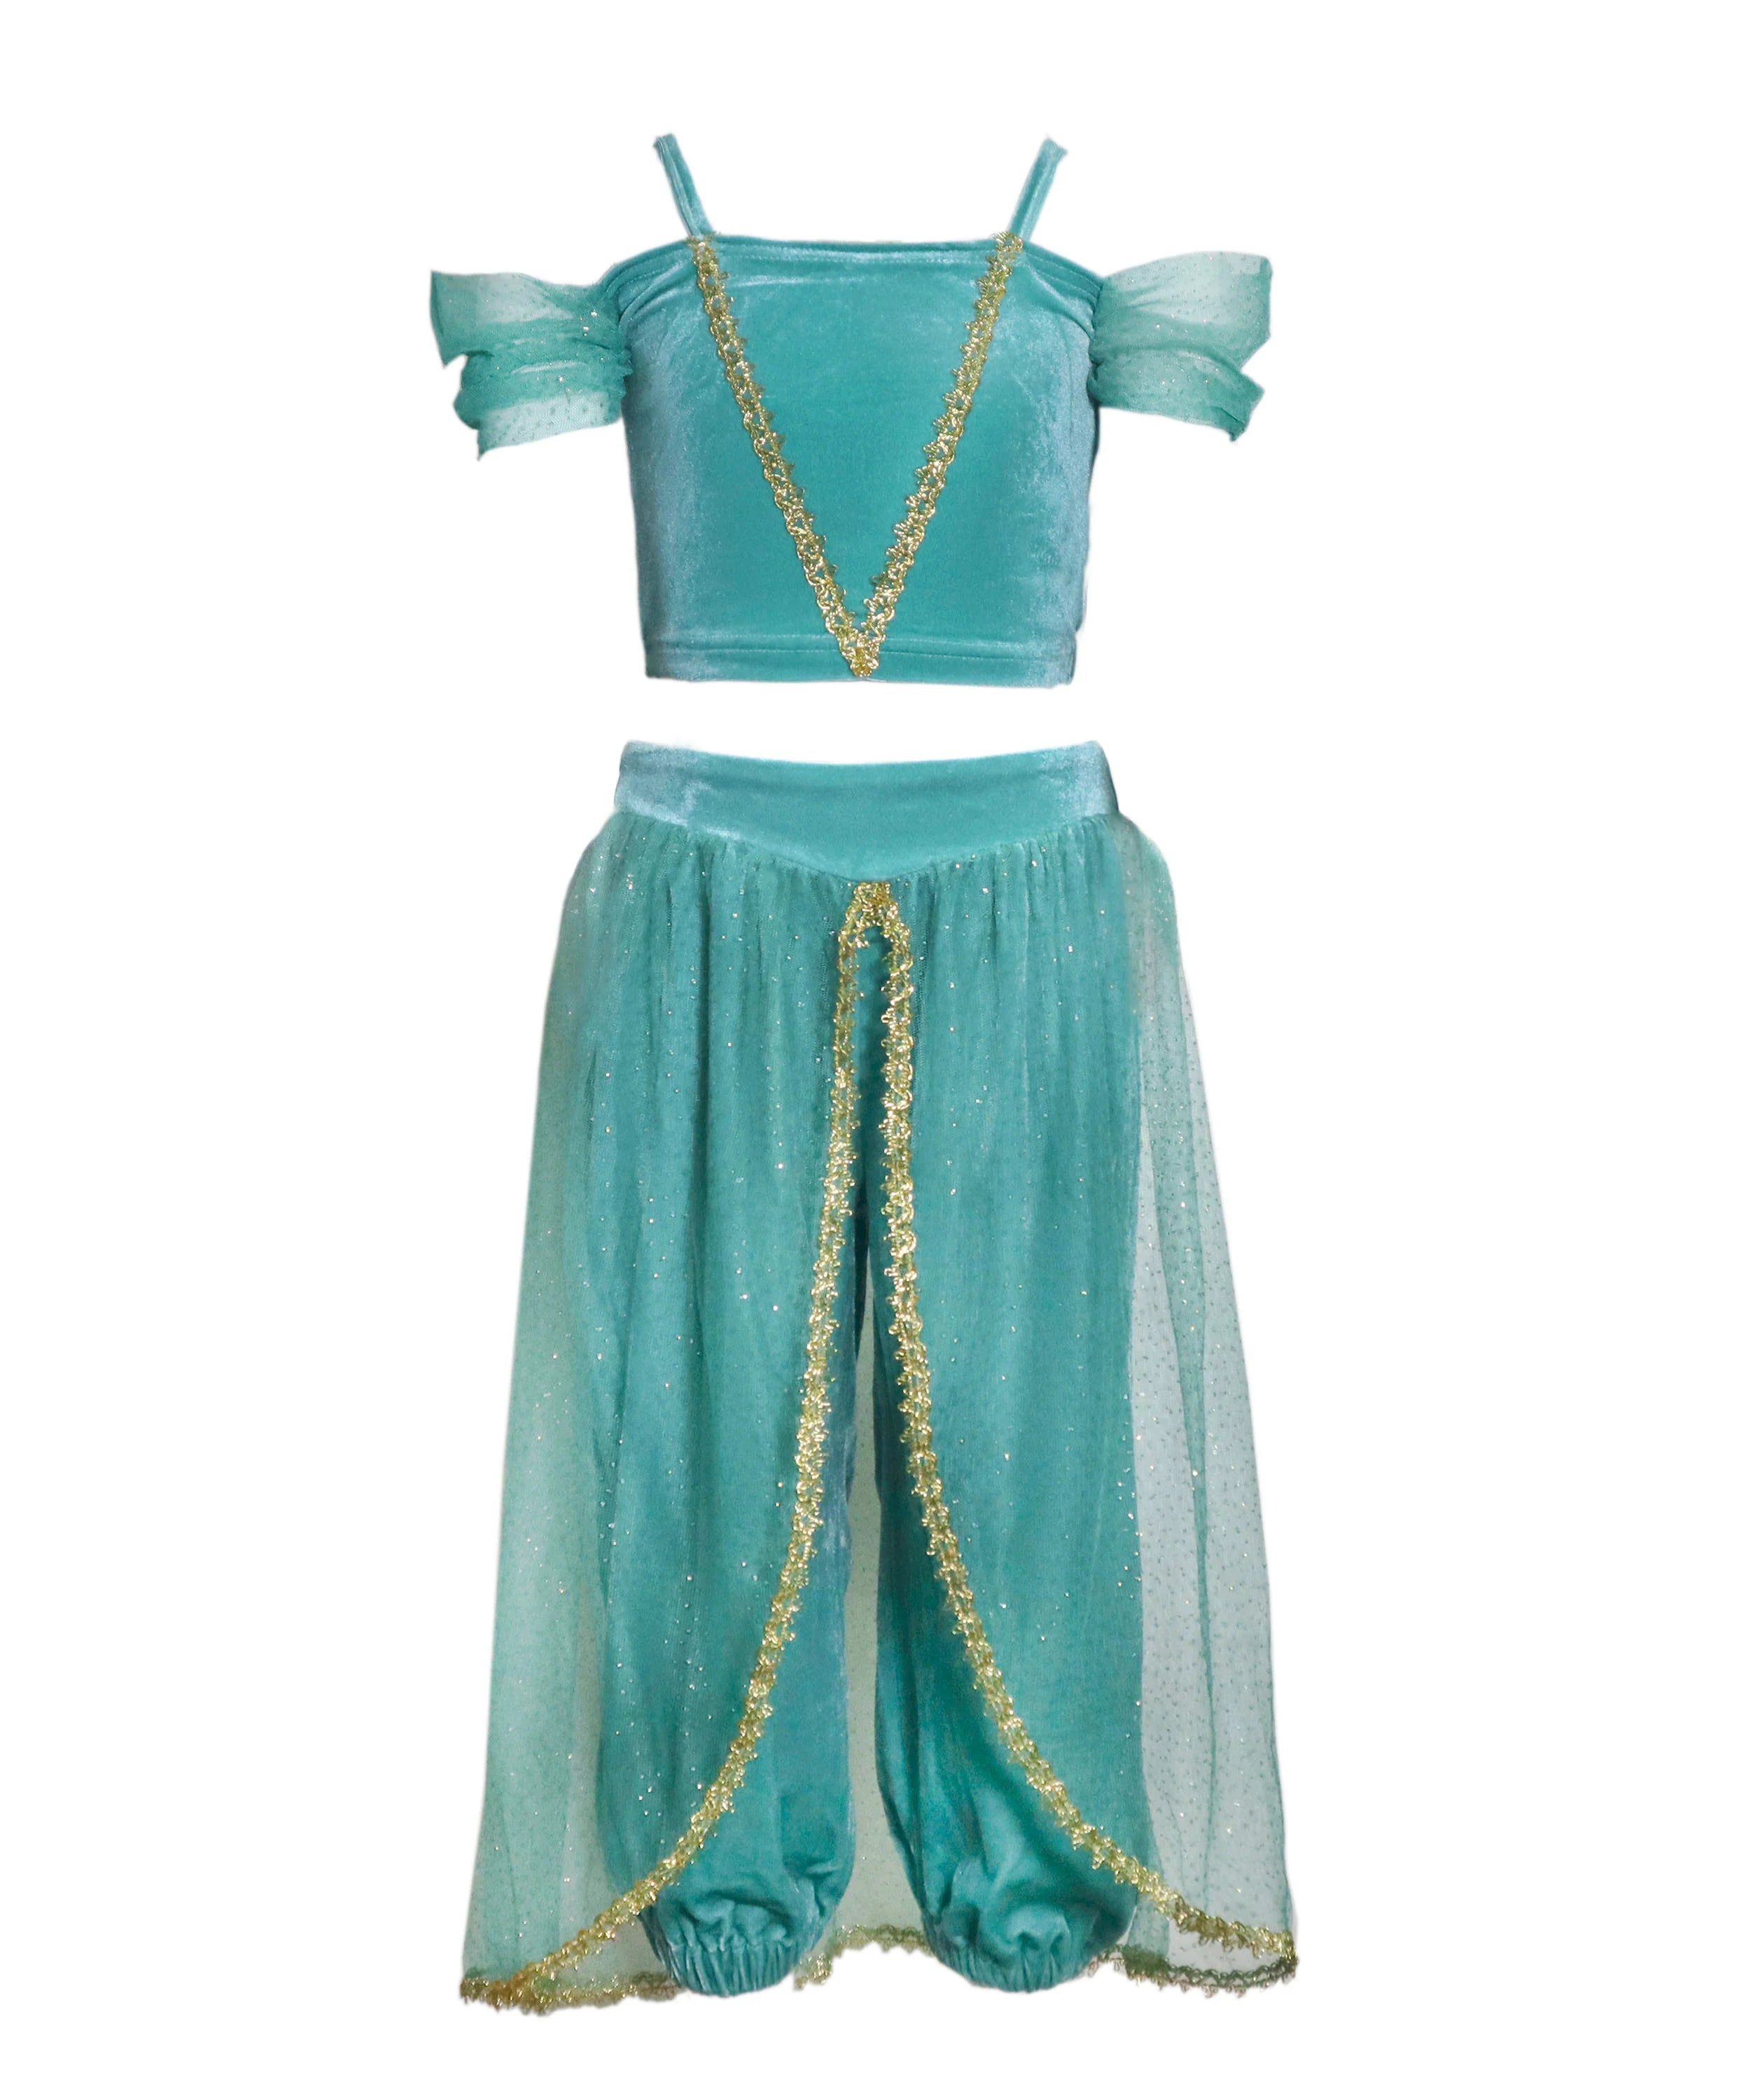 Joy Costumes Arabian Princess